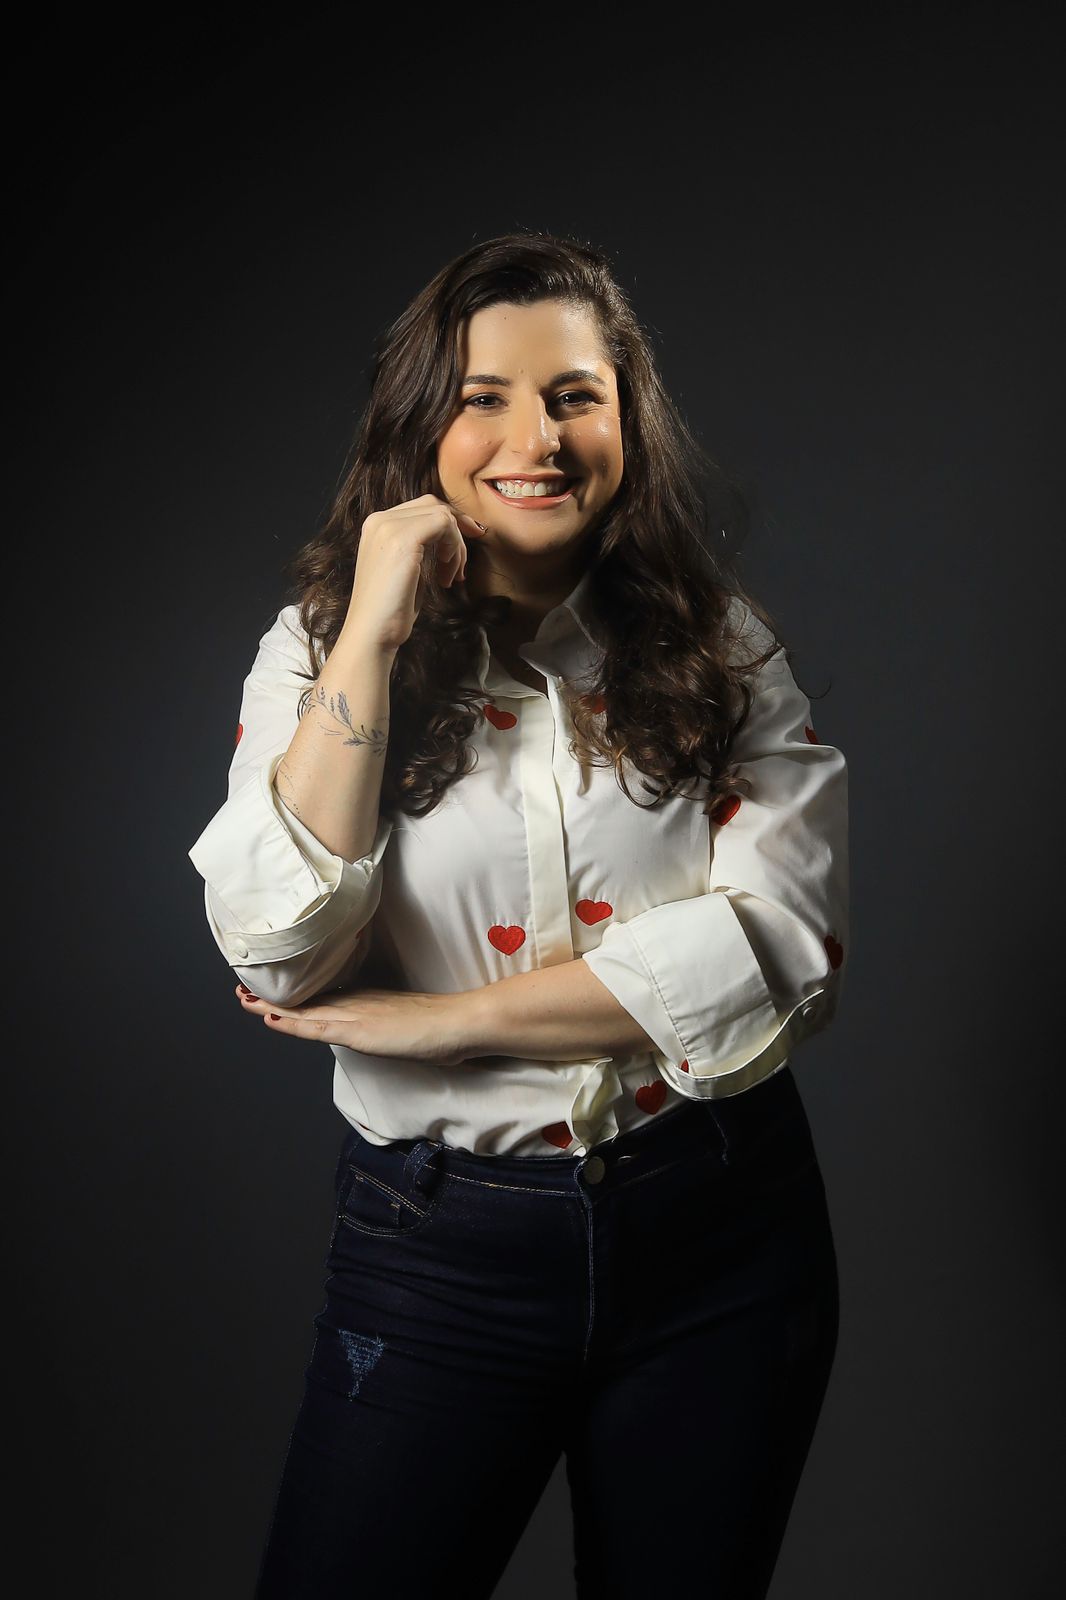 Maira Januzzi